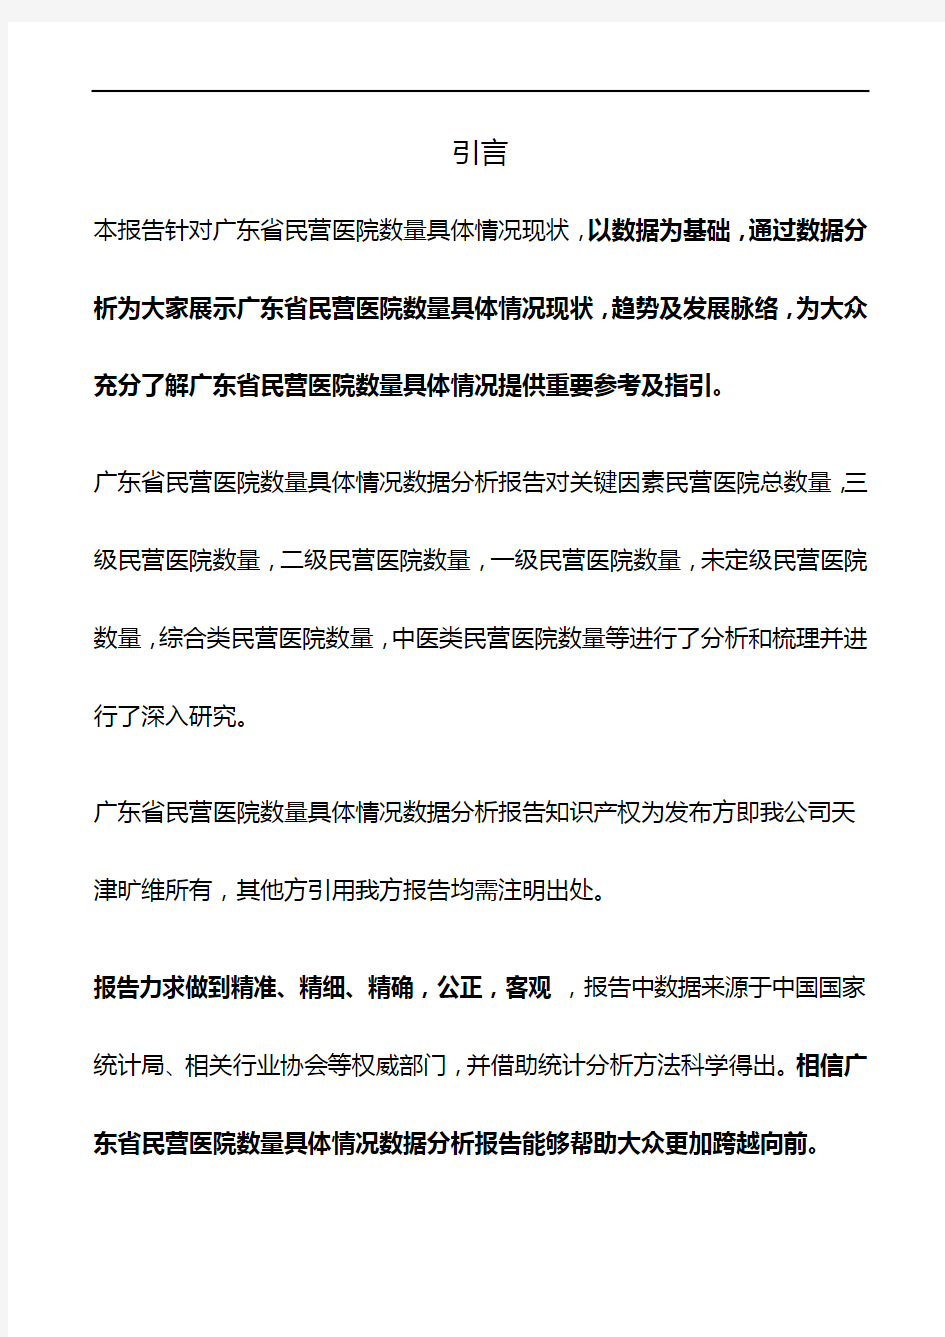 广东省民营医院数量具体情况3年数据分析报告2019版